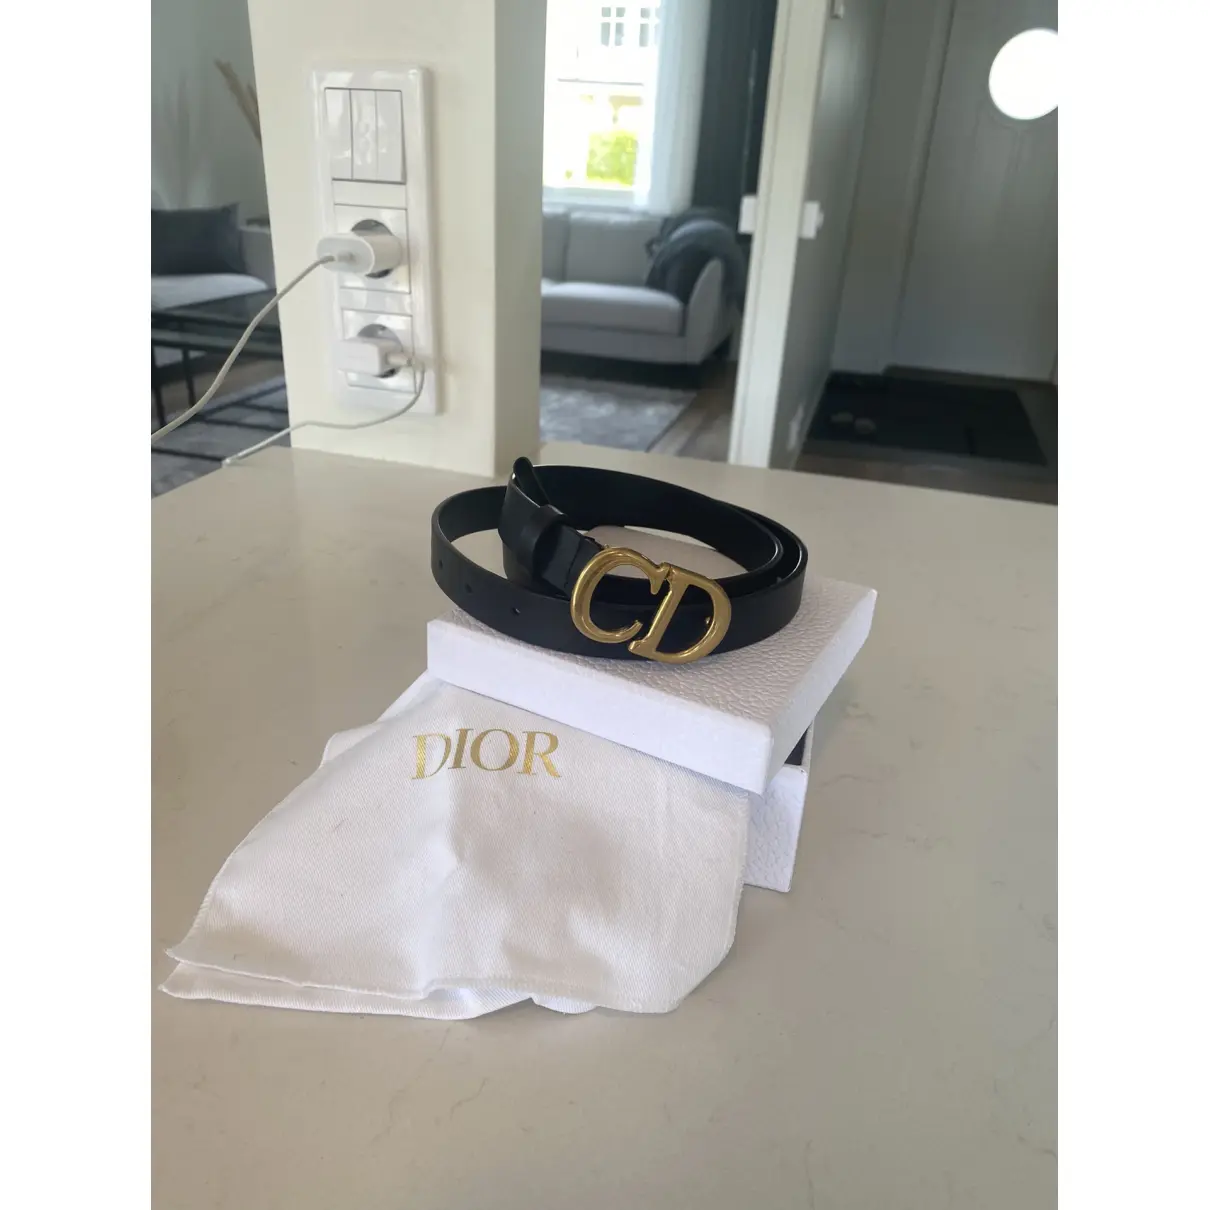 Buy Dior Belt online